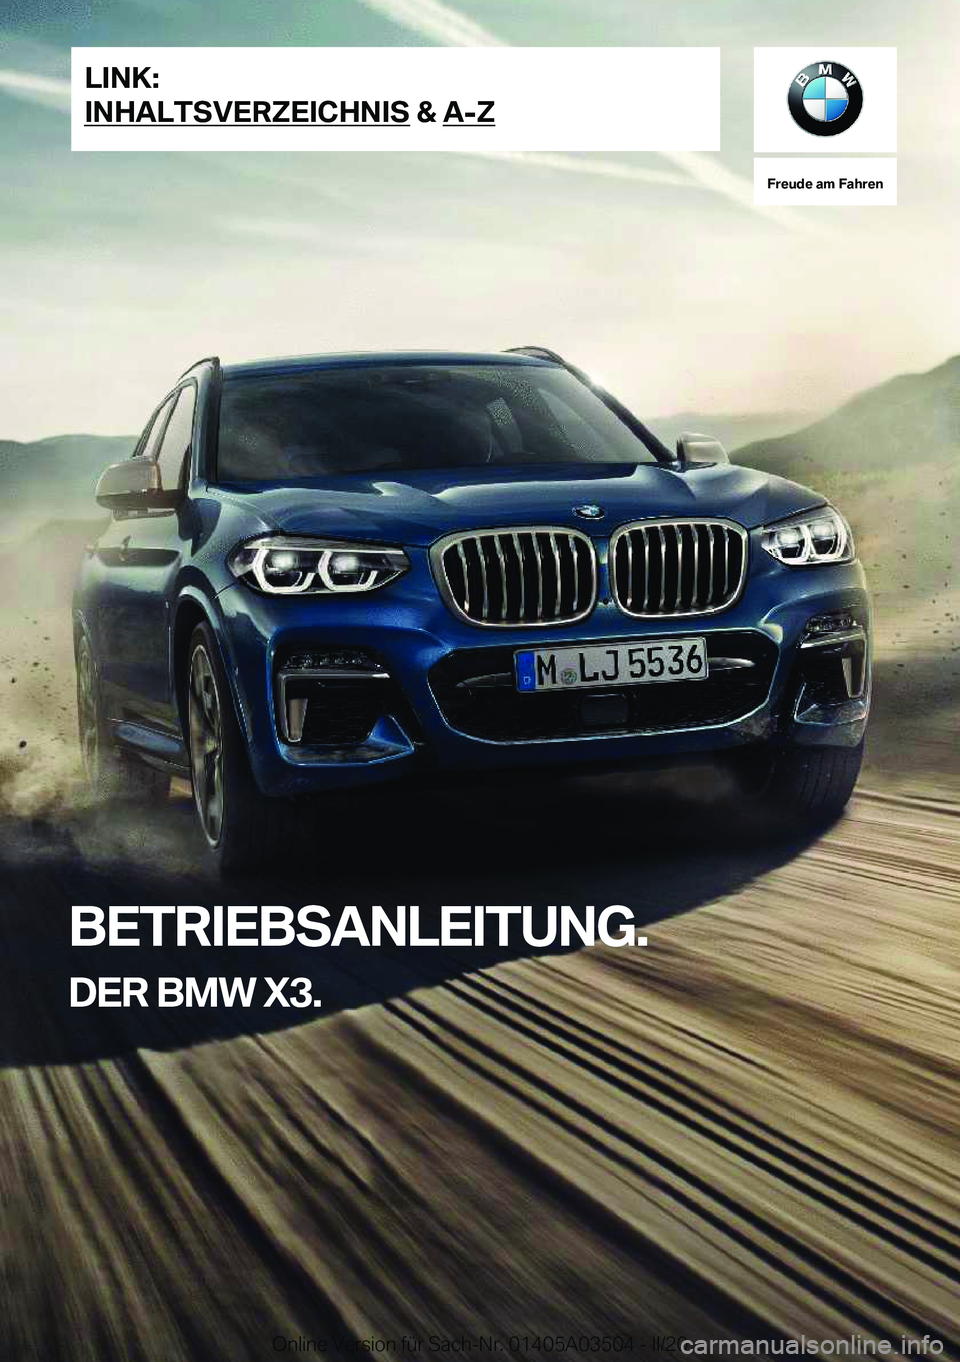 BMW X3 2020  Betriebsanleitungen (in German) �F�r�e�u�d�e��a�m��F�a�h�r�e�n
�B�E�T�R�I�E�B�S�A�N�L�E�I�T�U�N�G�.�D�E�R��B�M�W��X�3�.�L�I�N�K�:
�I�N�H�A�L�T�S�V�E�R�Z�E�I�C�H�N�I�S��&��A�-�Z�O�n�l�i�n�e��V�e�r�s�i�o�n��f�